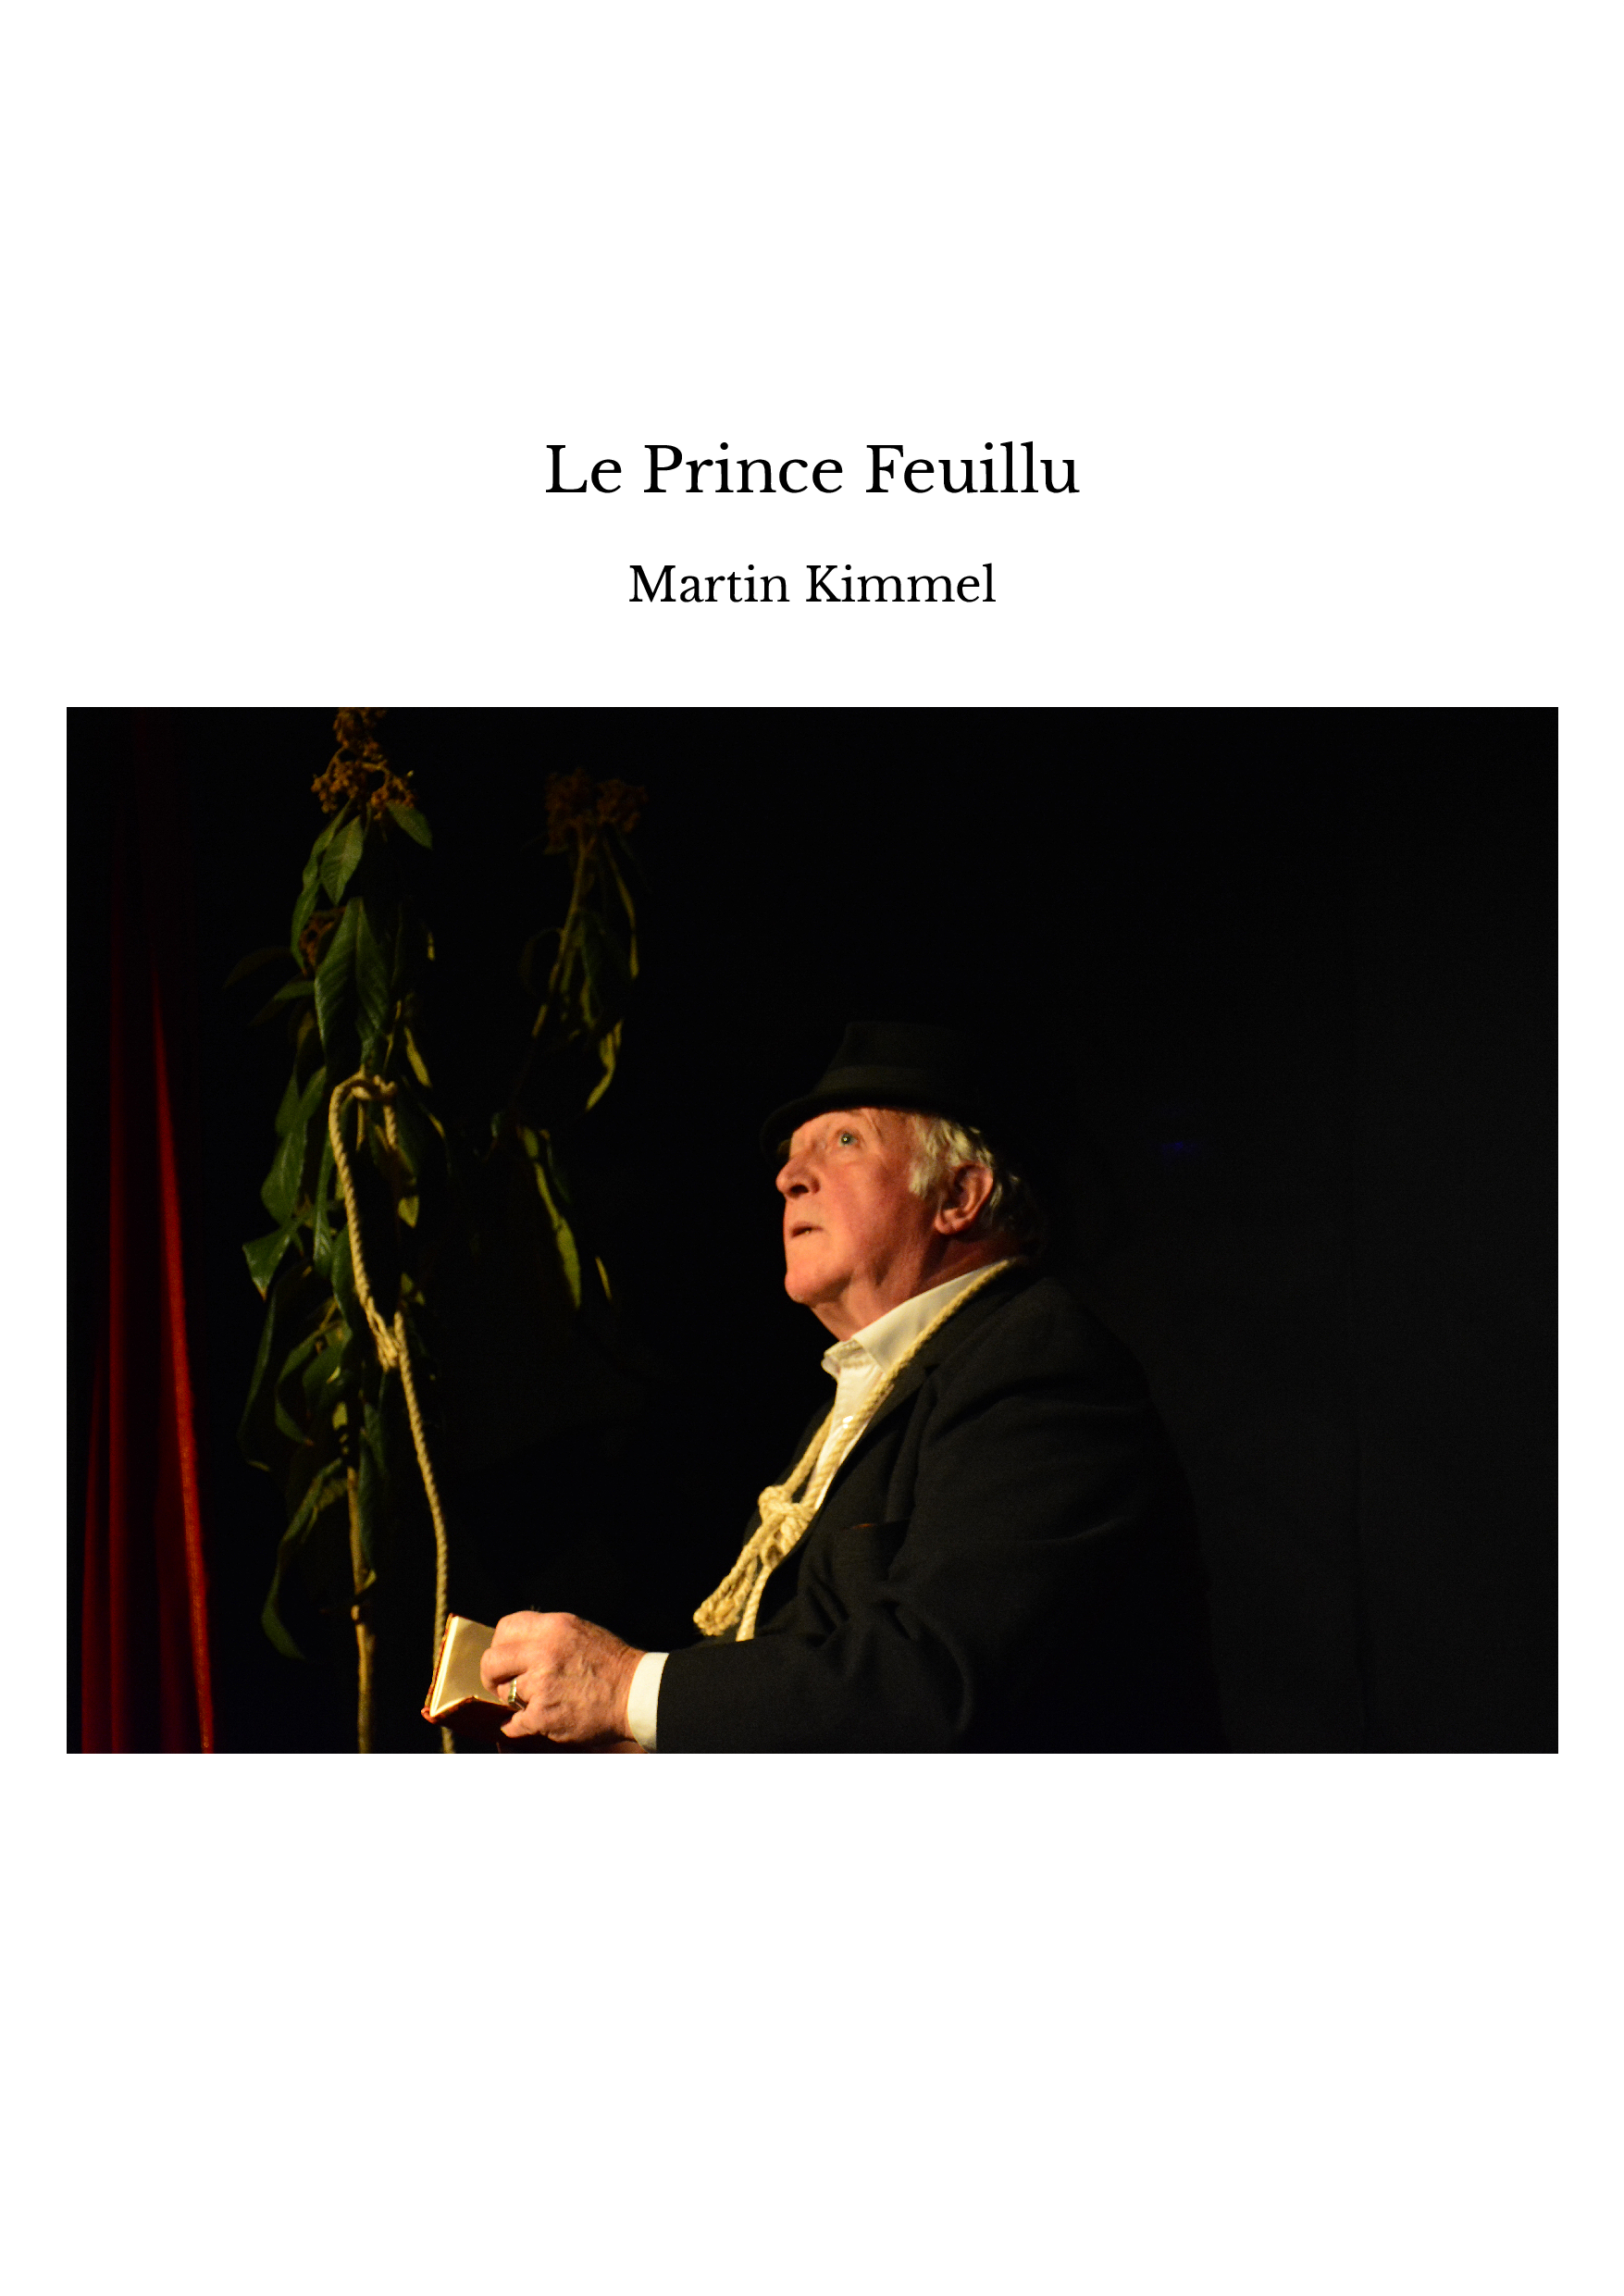 Le Prince Feuillu